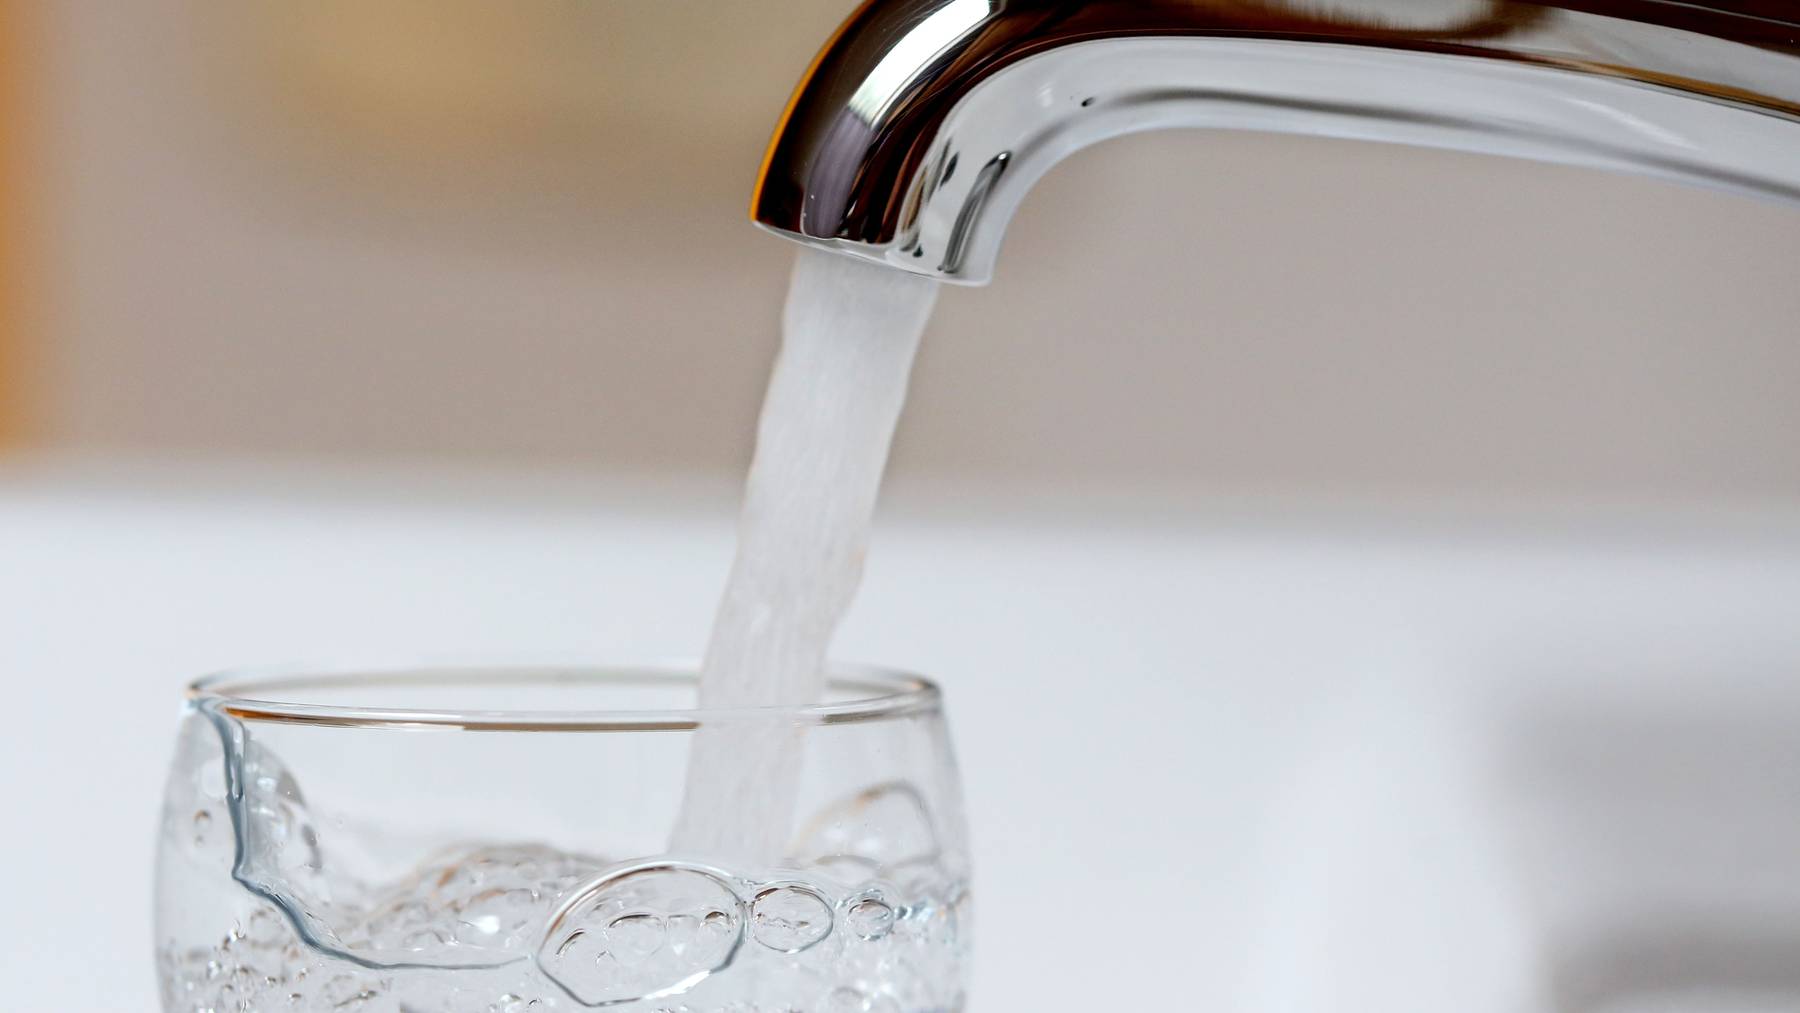 Die ersten Gläser Wasser sollte man nicht trinken. Weil die Leitungen über Wochen kaum genutzt wurden, haben sich Mikroorganismen gebildet.